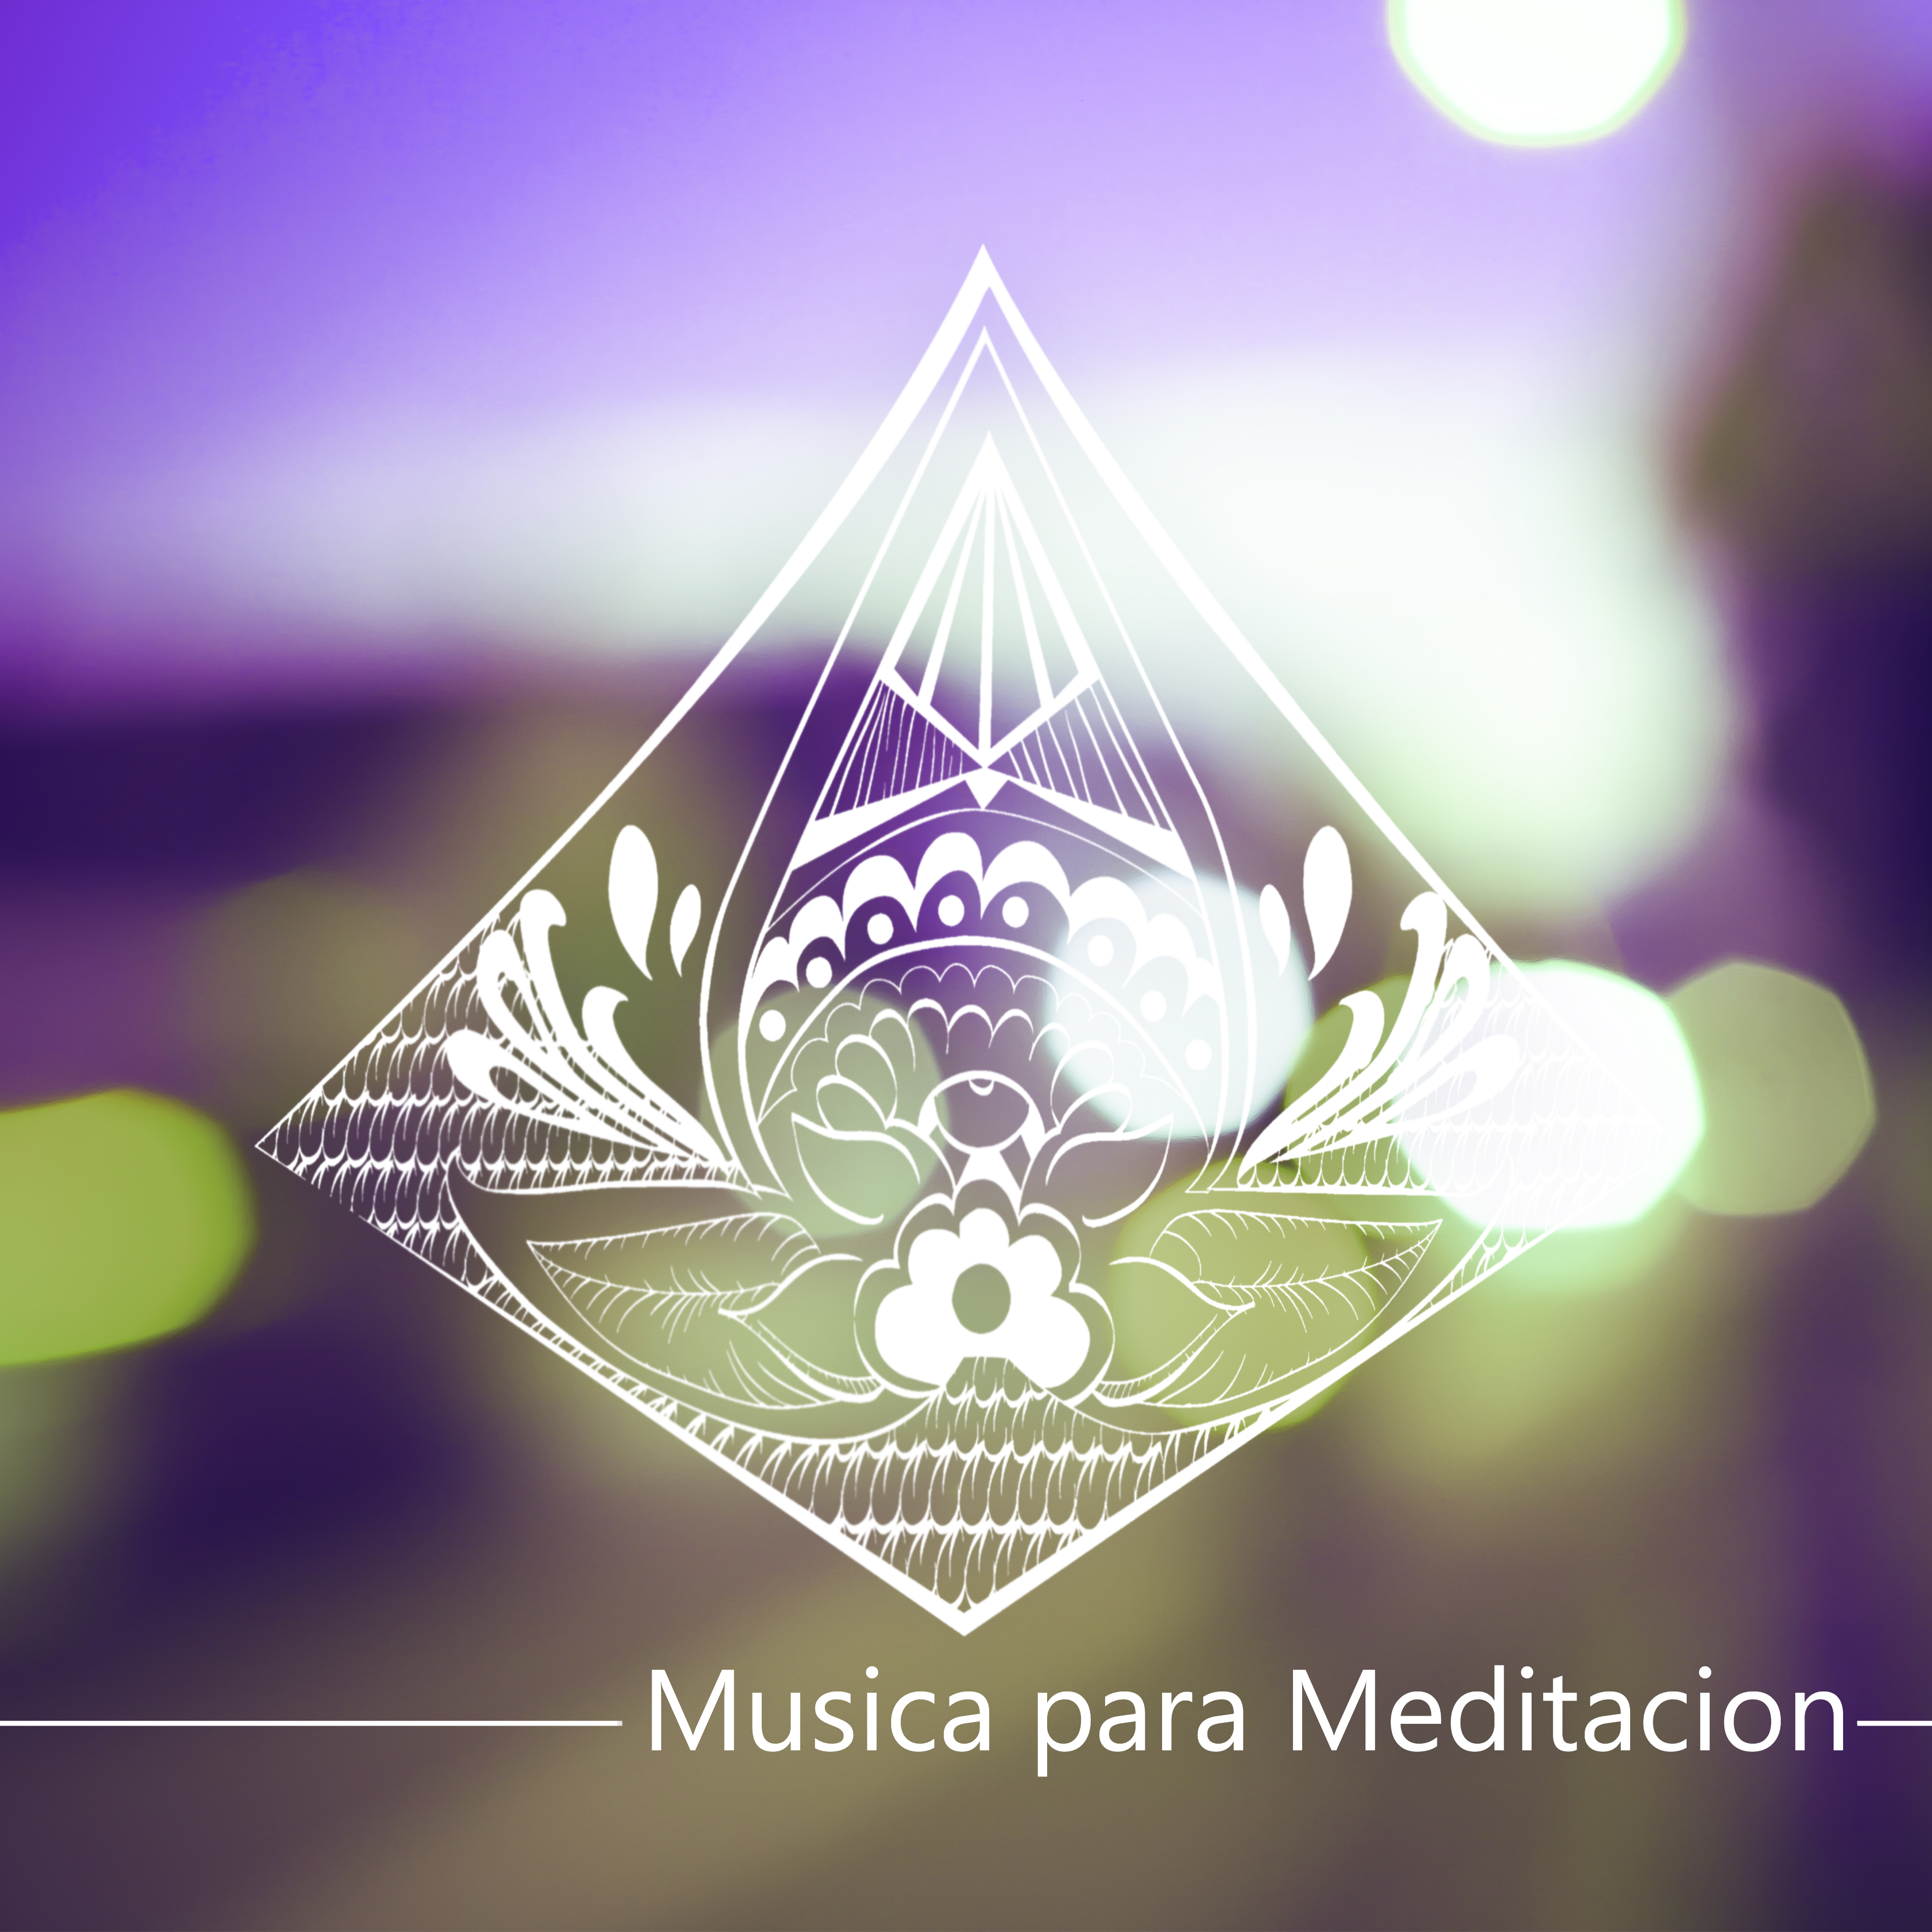 Musica para Meditacion – Bienestar, Relajacion y Serenidad, Musica para Sanar el Alma, Meditar, Yoga, Reiki, Ayurveda, Zen